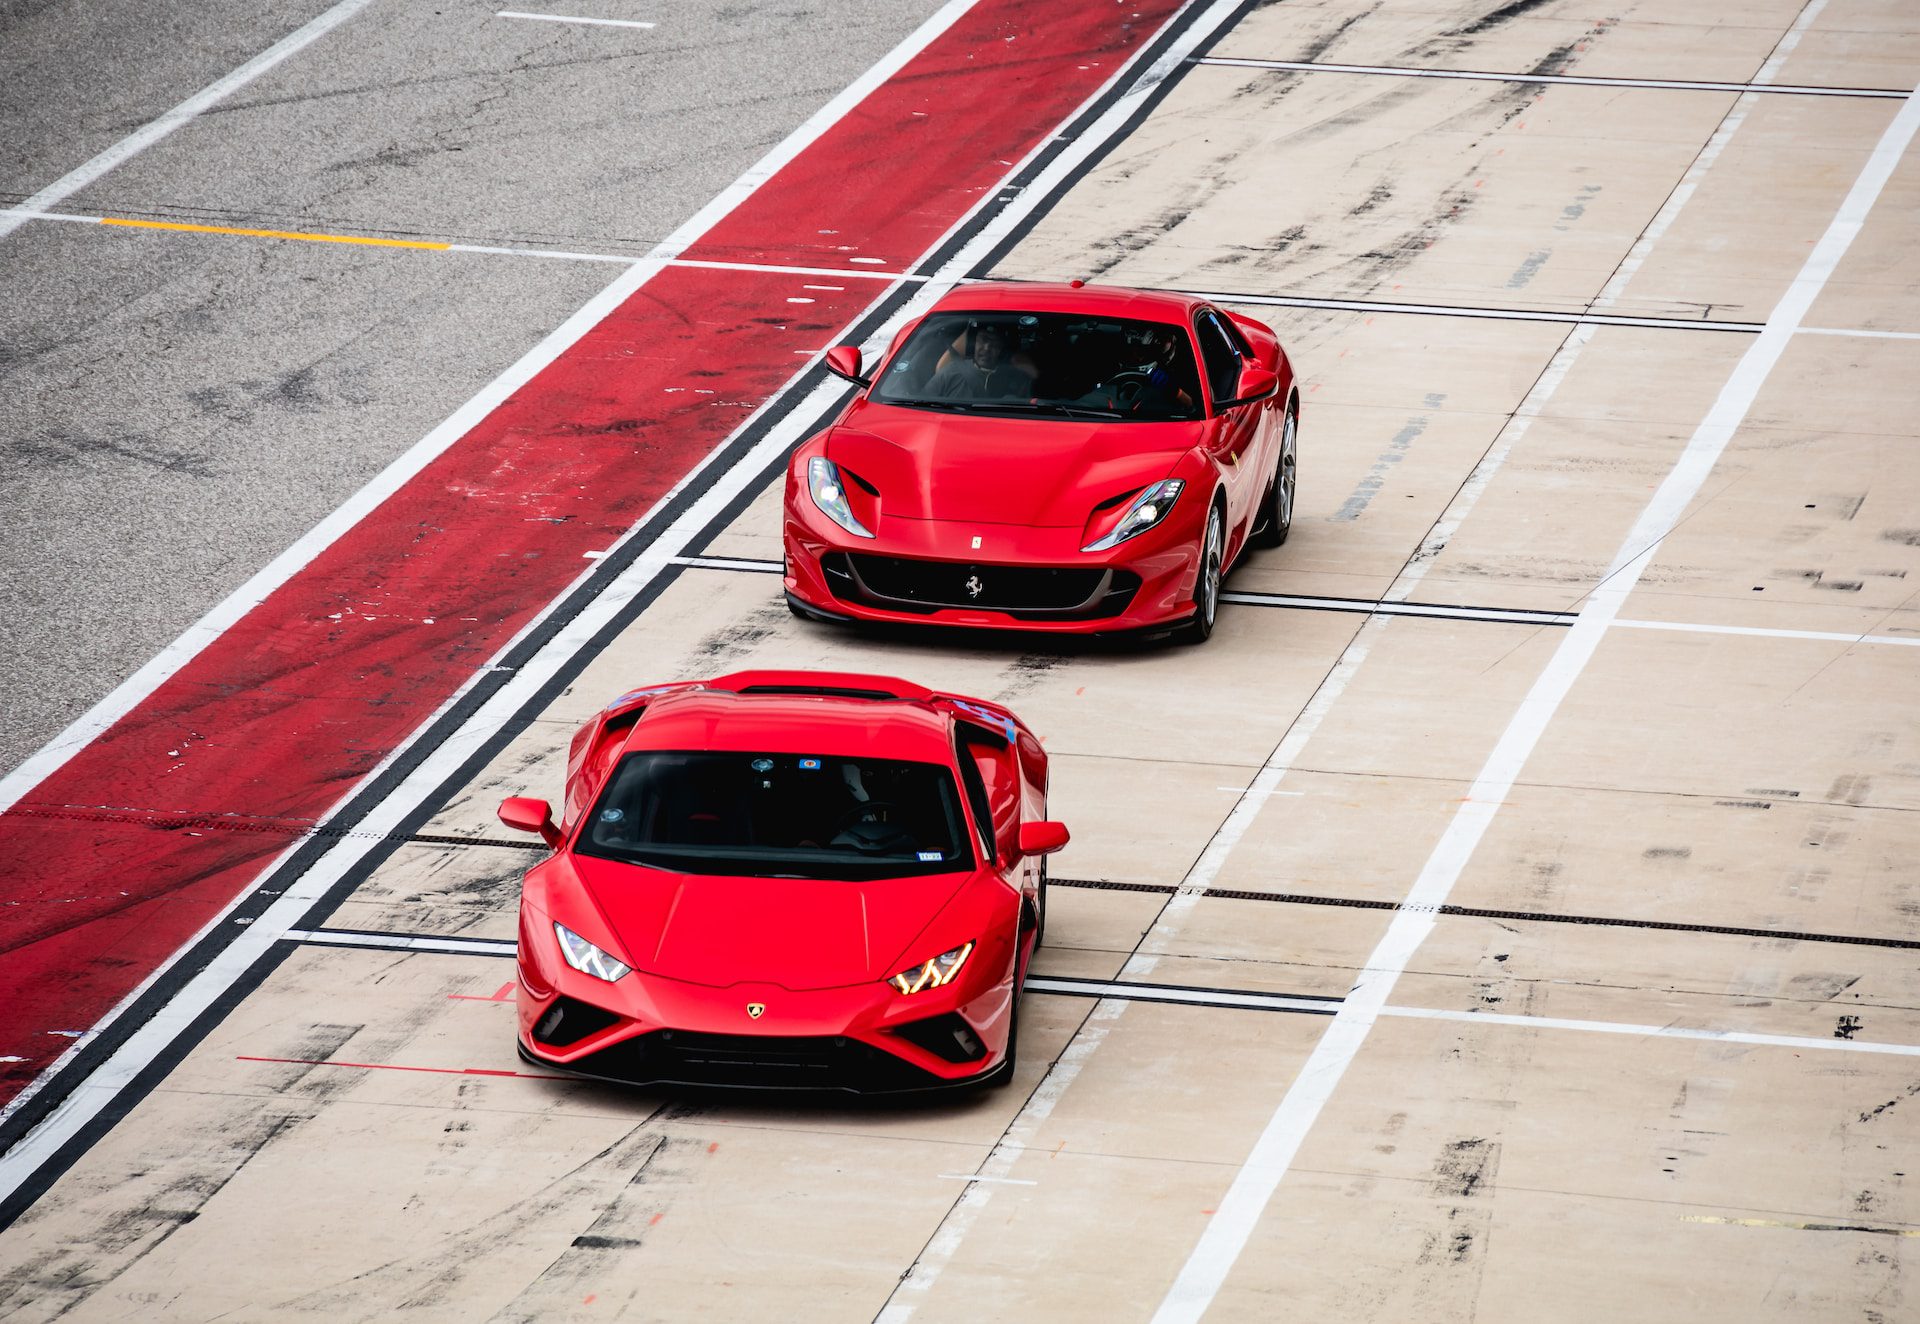 Lamborghini vs. Ferrari: Which Italian Supercar Reigns Supreme?